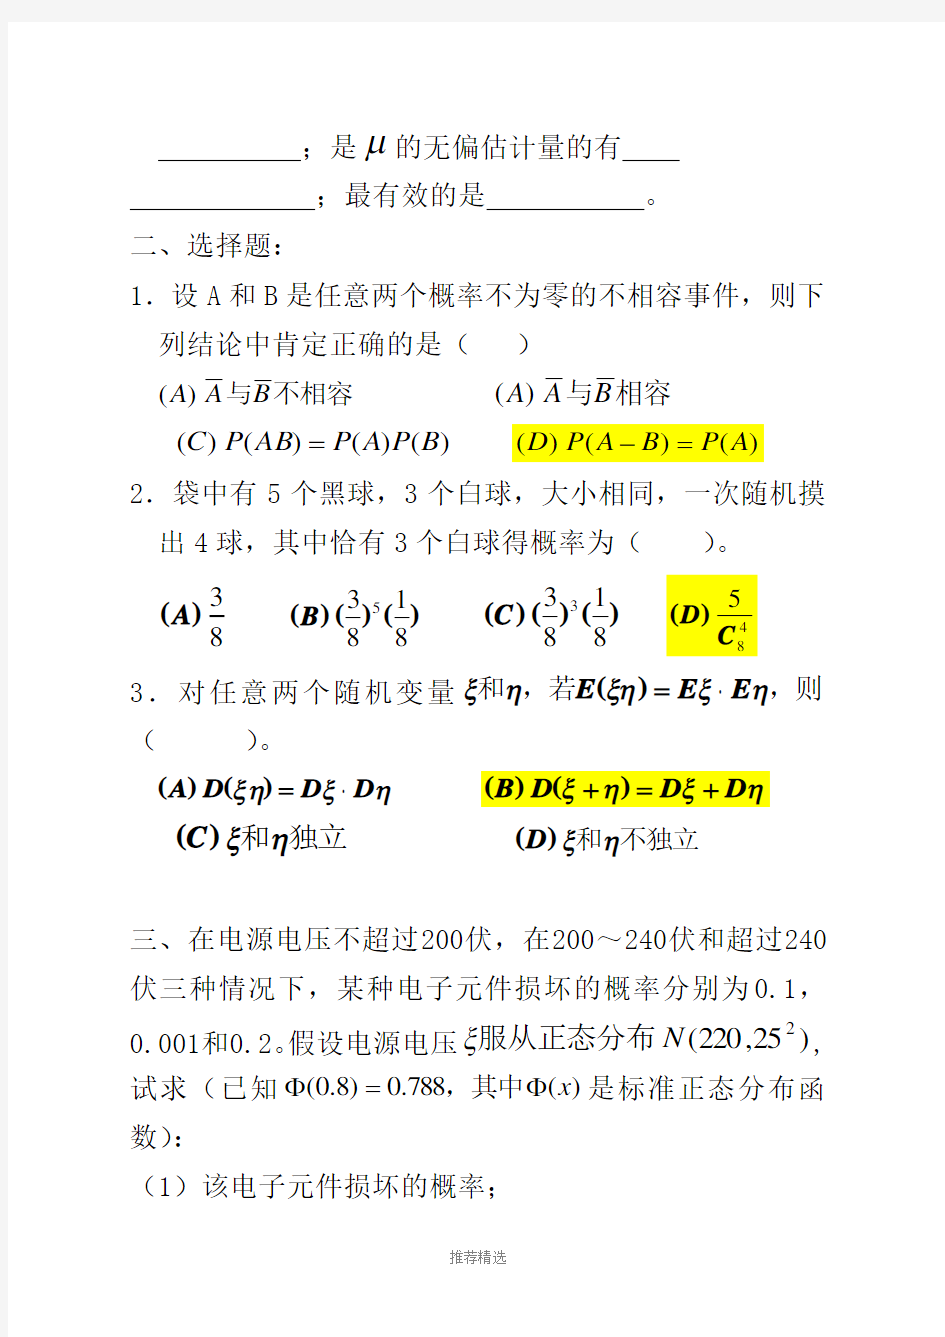 南京工业大学-概率统计模拟题